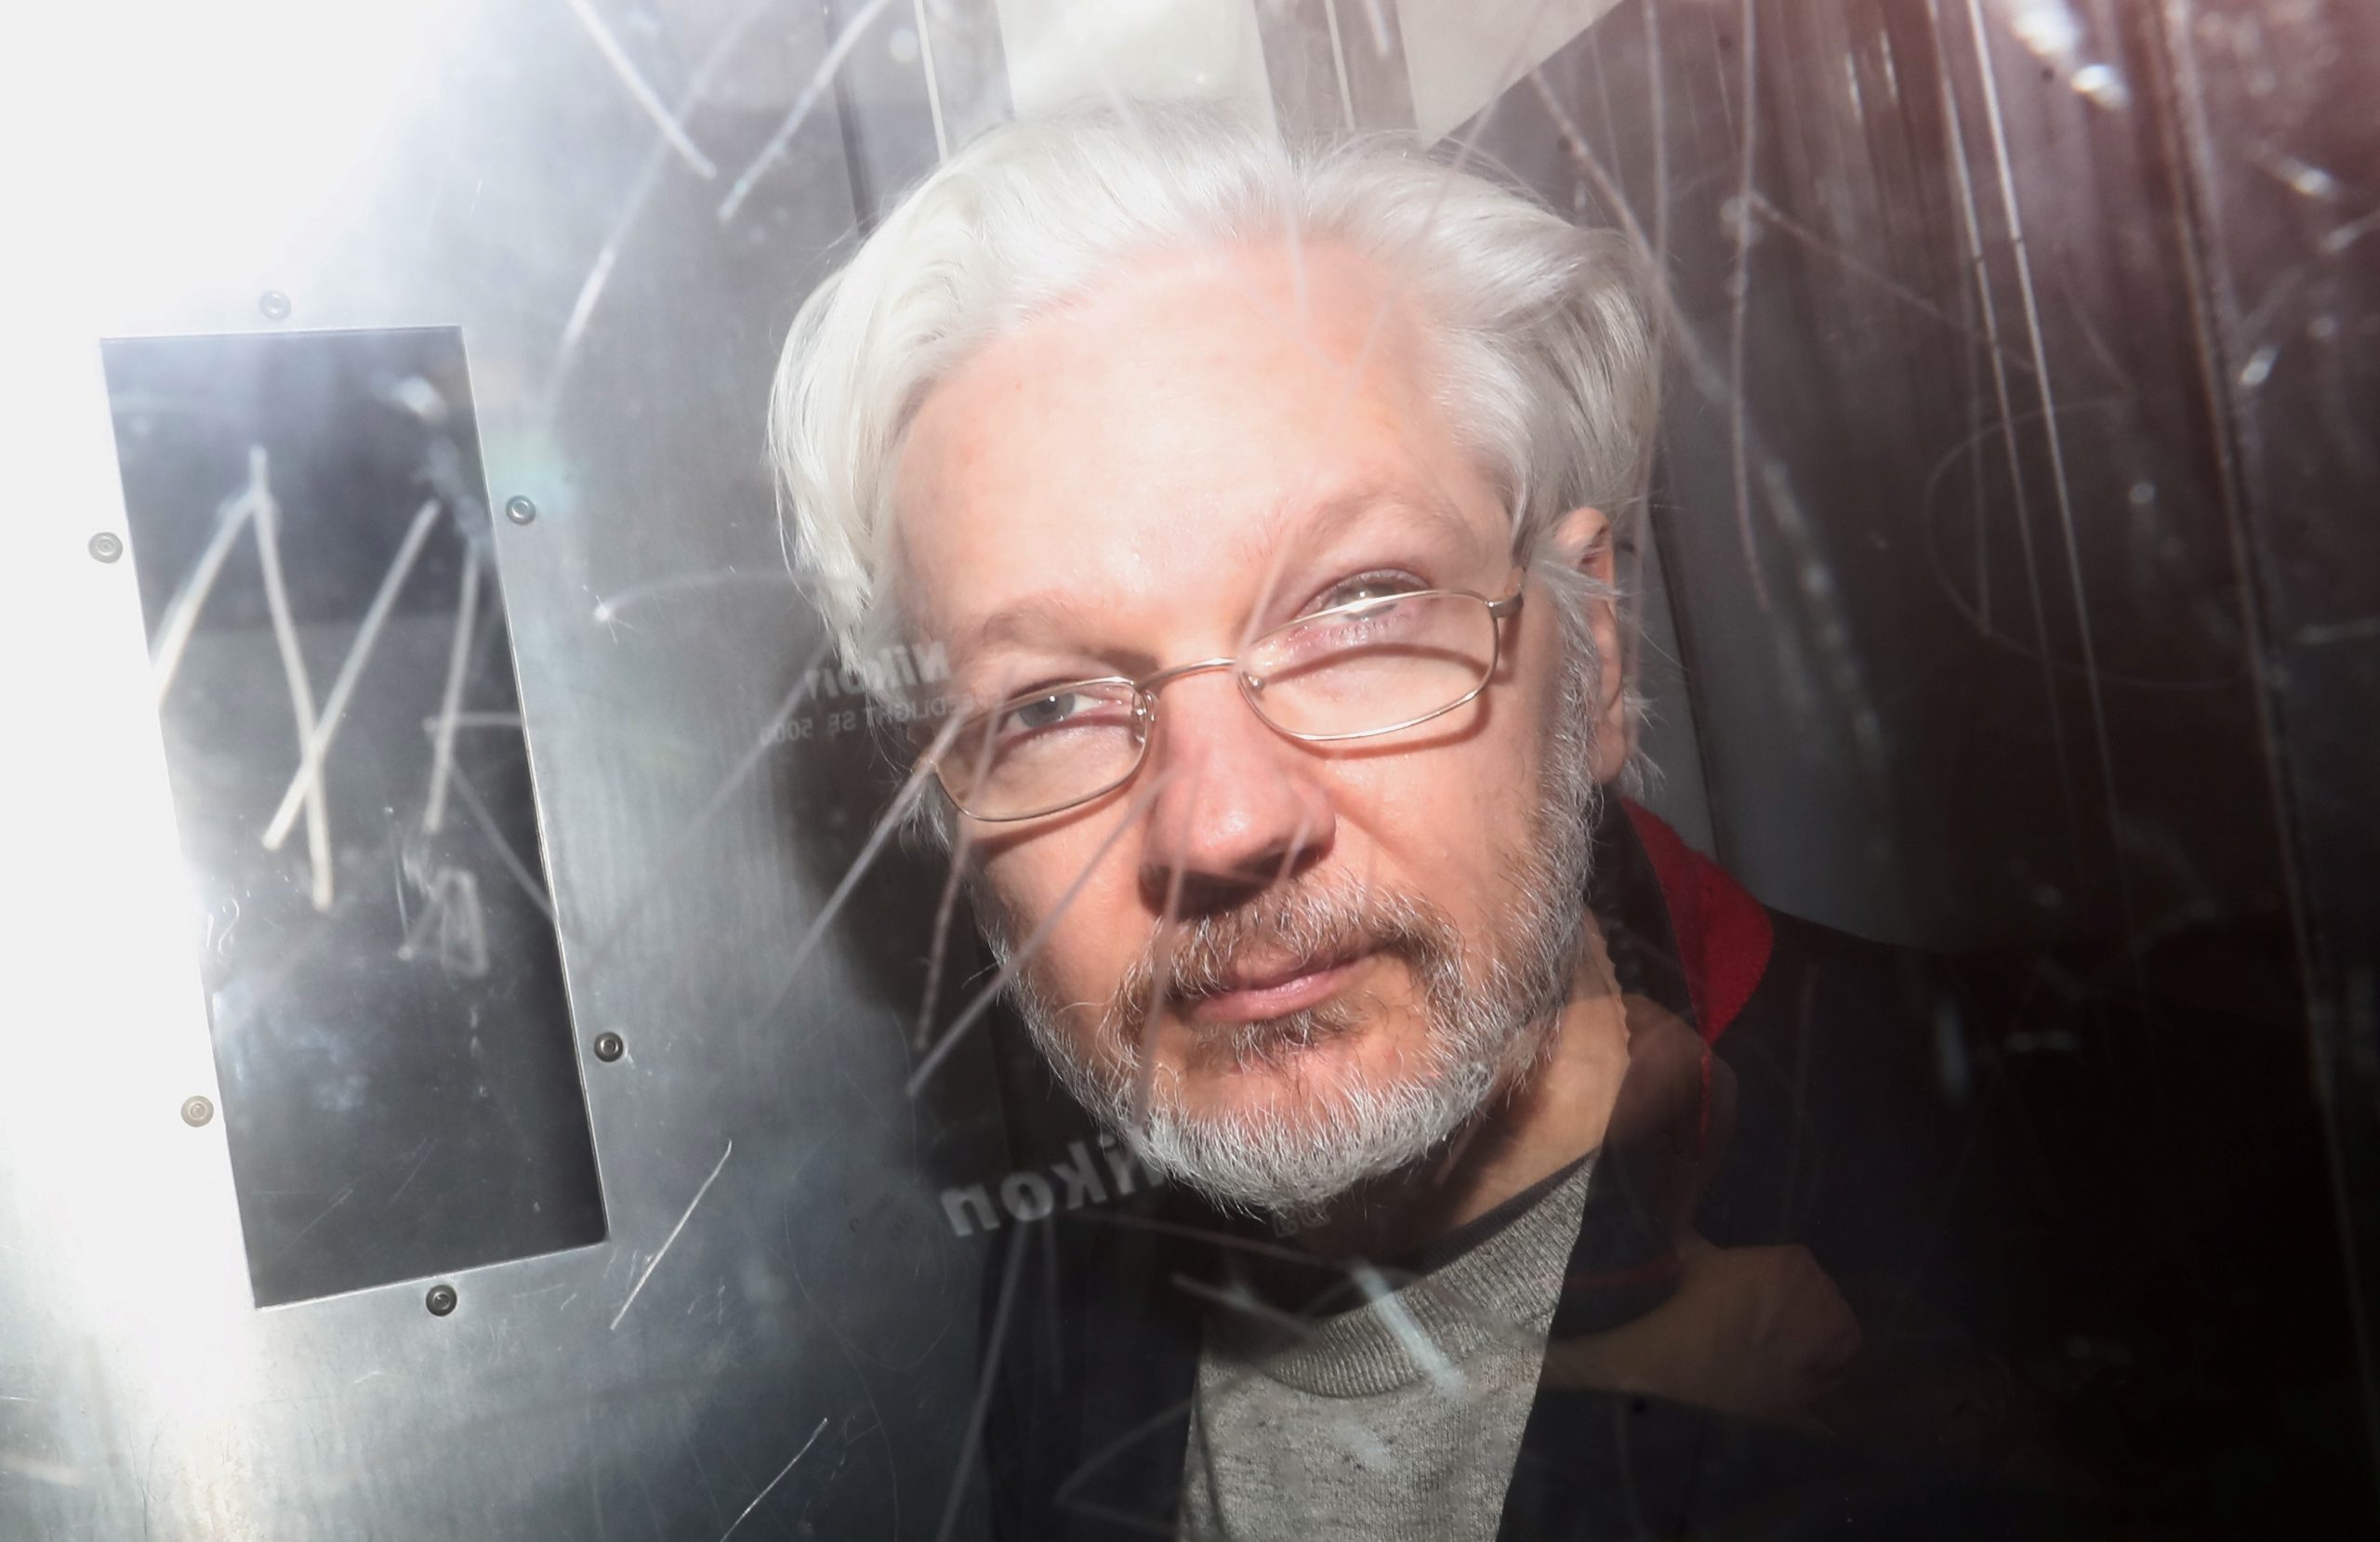 Anhorung Assange Keinerlei Beweise M Menschen Machen Medien Ver Di